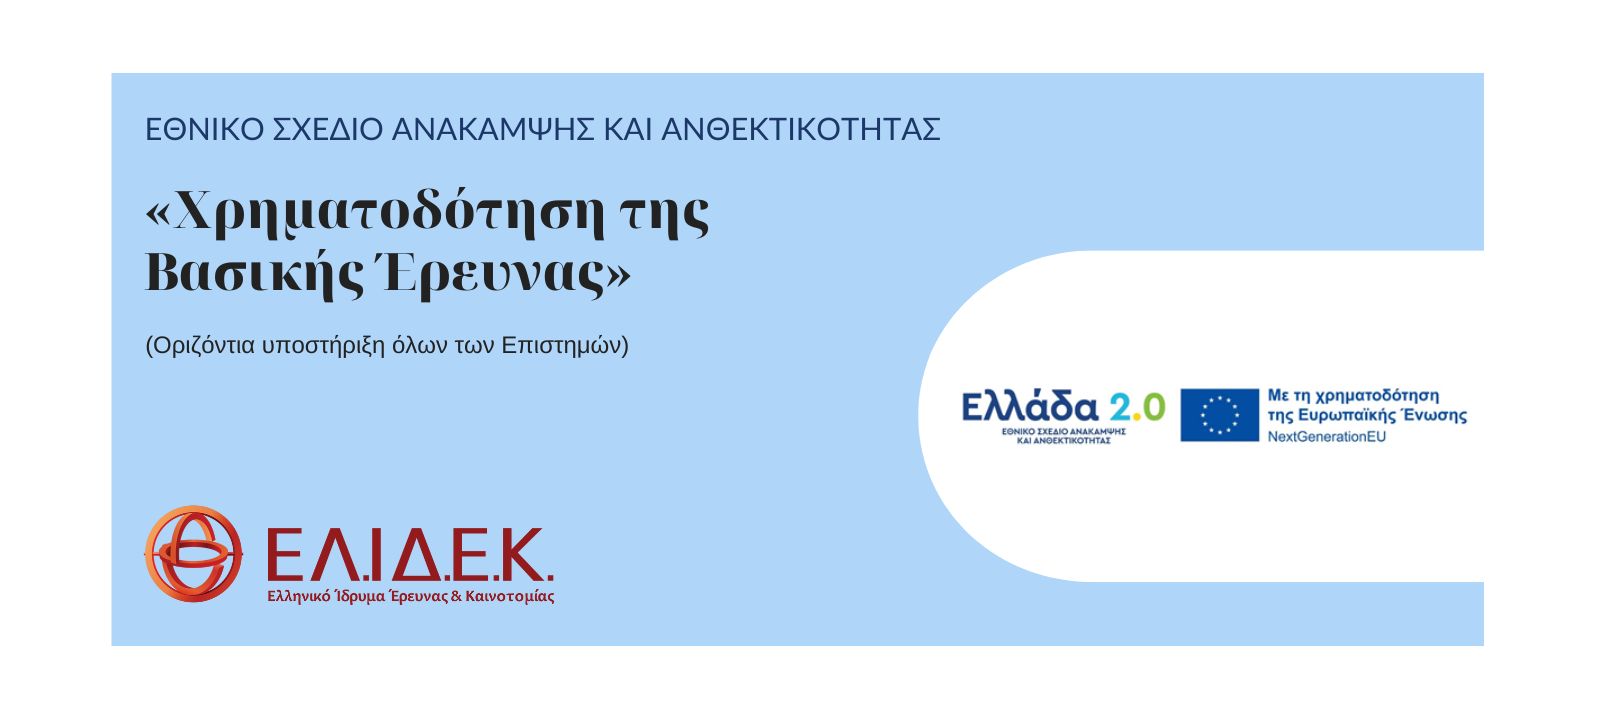 Προκήρυξη «Χρηματοδότηση της Βασικής Έρευνας» (Οριζόντια υποστήριξη όλων των Επιστημών), Εθνικό Σχέδιο Ανάκαμψης και Ανθεκτικότητας (Ελλάδα 2.0)